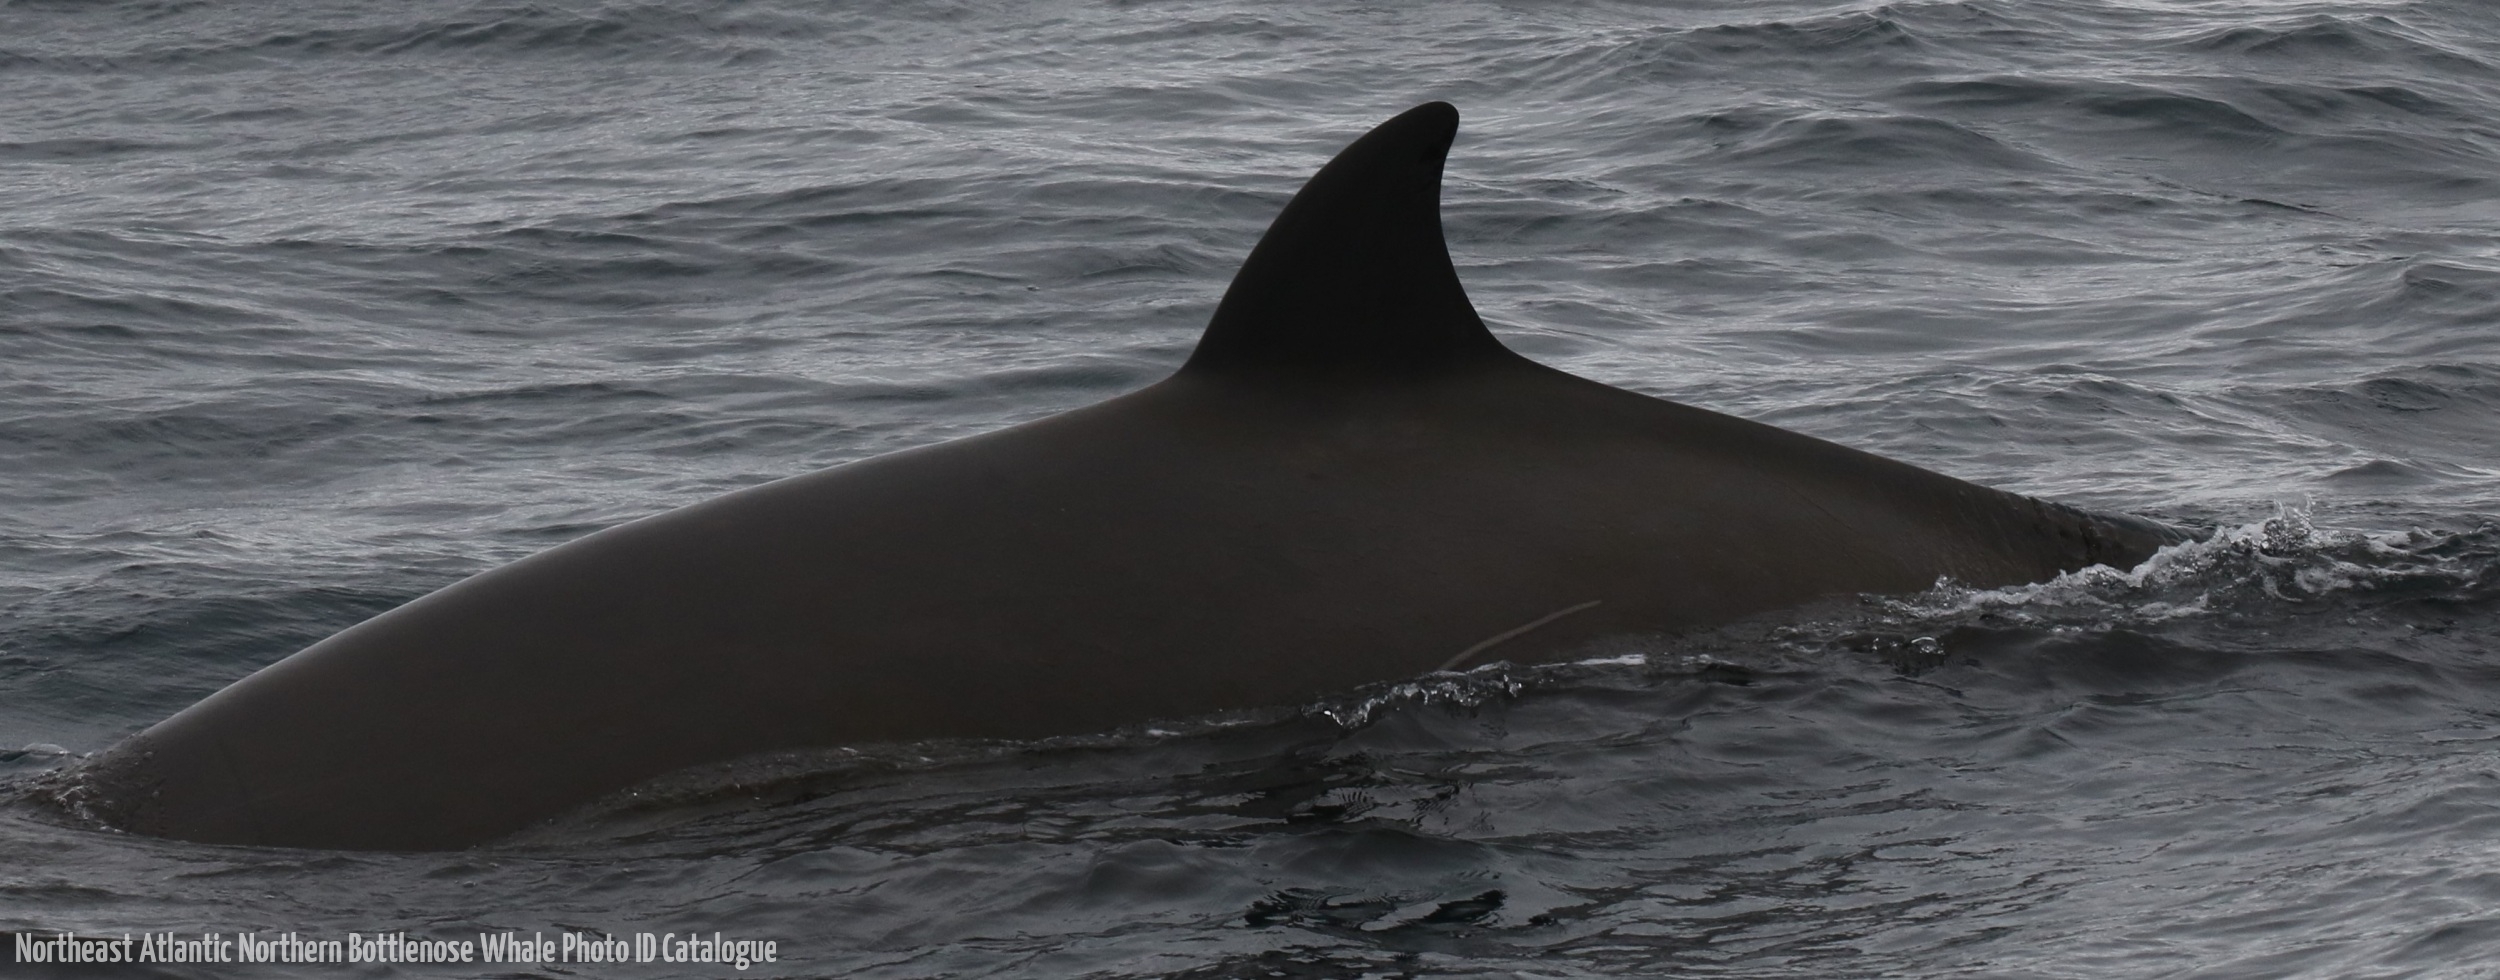 Whale ID: 0190,  Date taken: 19-06-2016,  Photographer: Eilidh Siegal